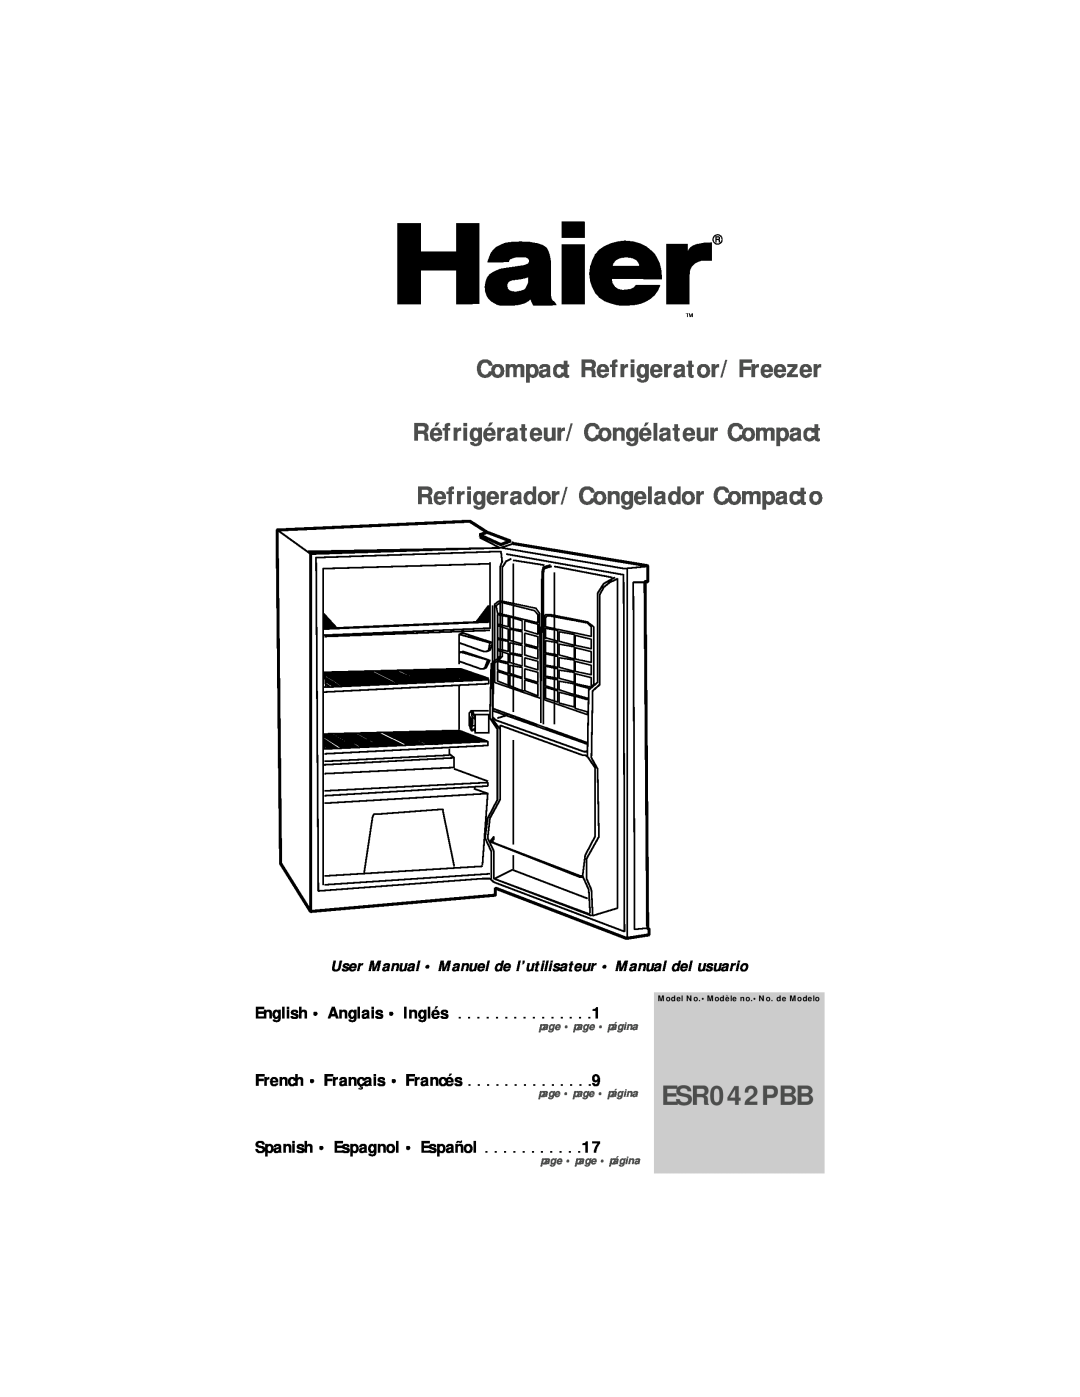 Haier ESR042PBB user manual Compact Refrigerator/Freezer Réfrigérateur/Congélateur Compact, English Anglais Inglés 